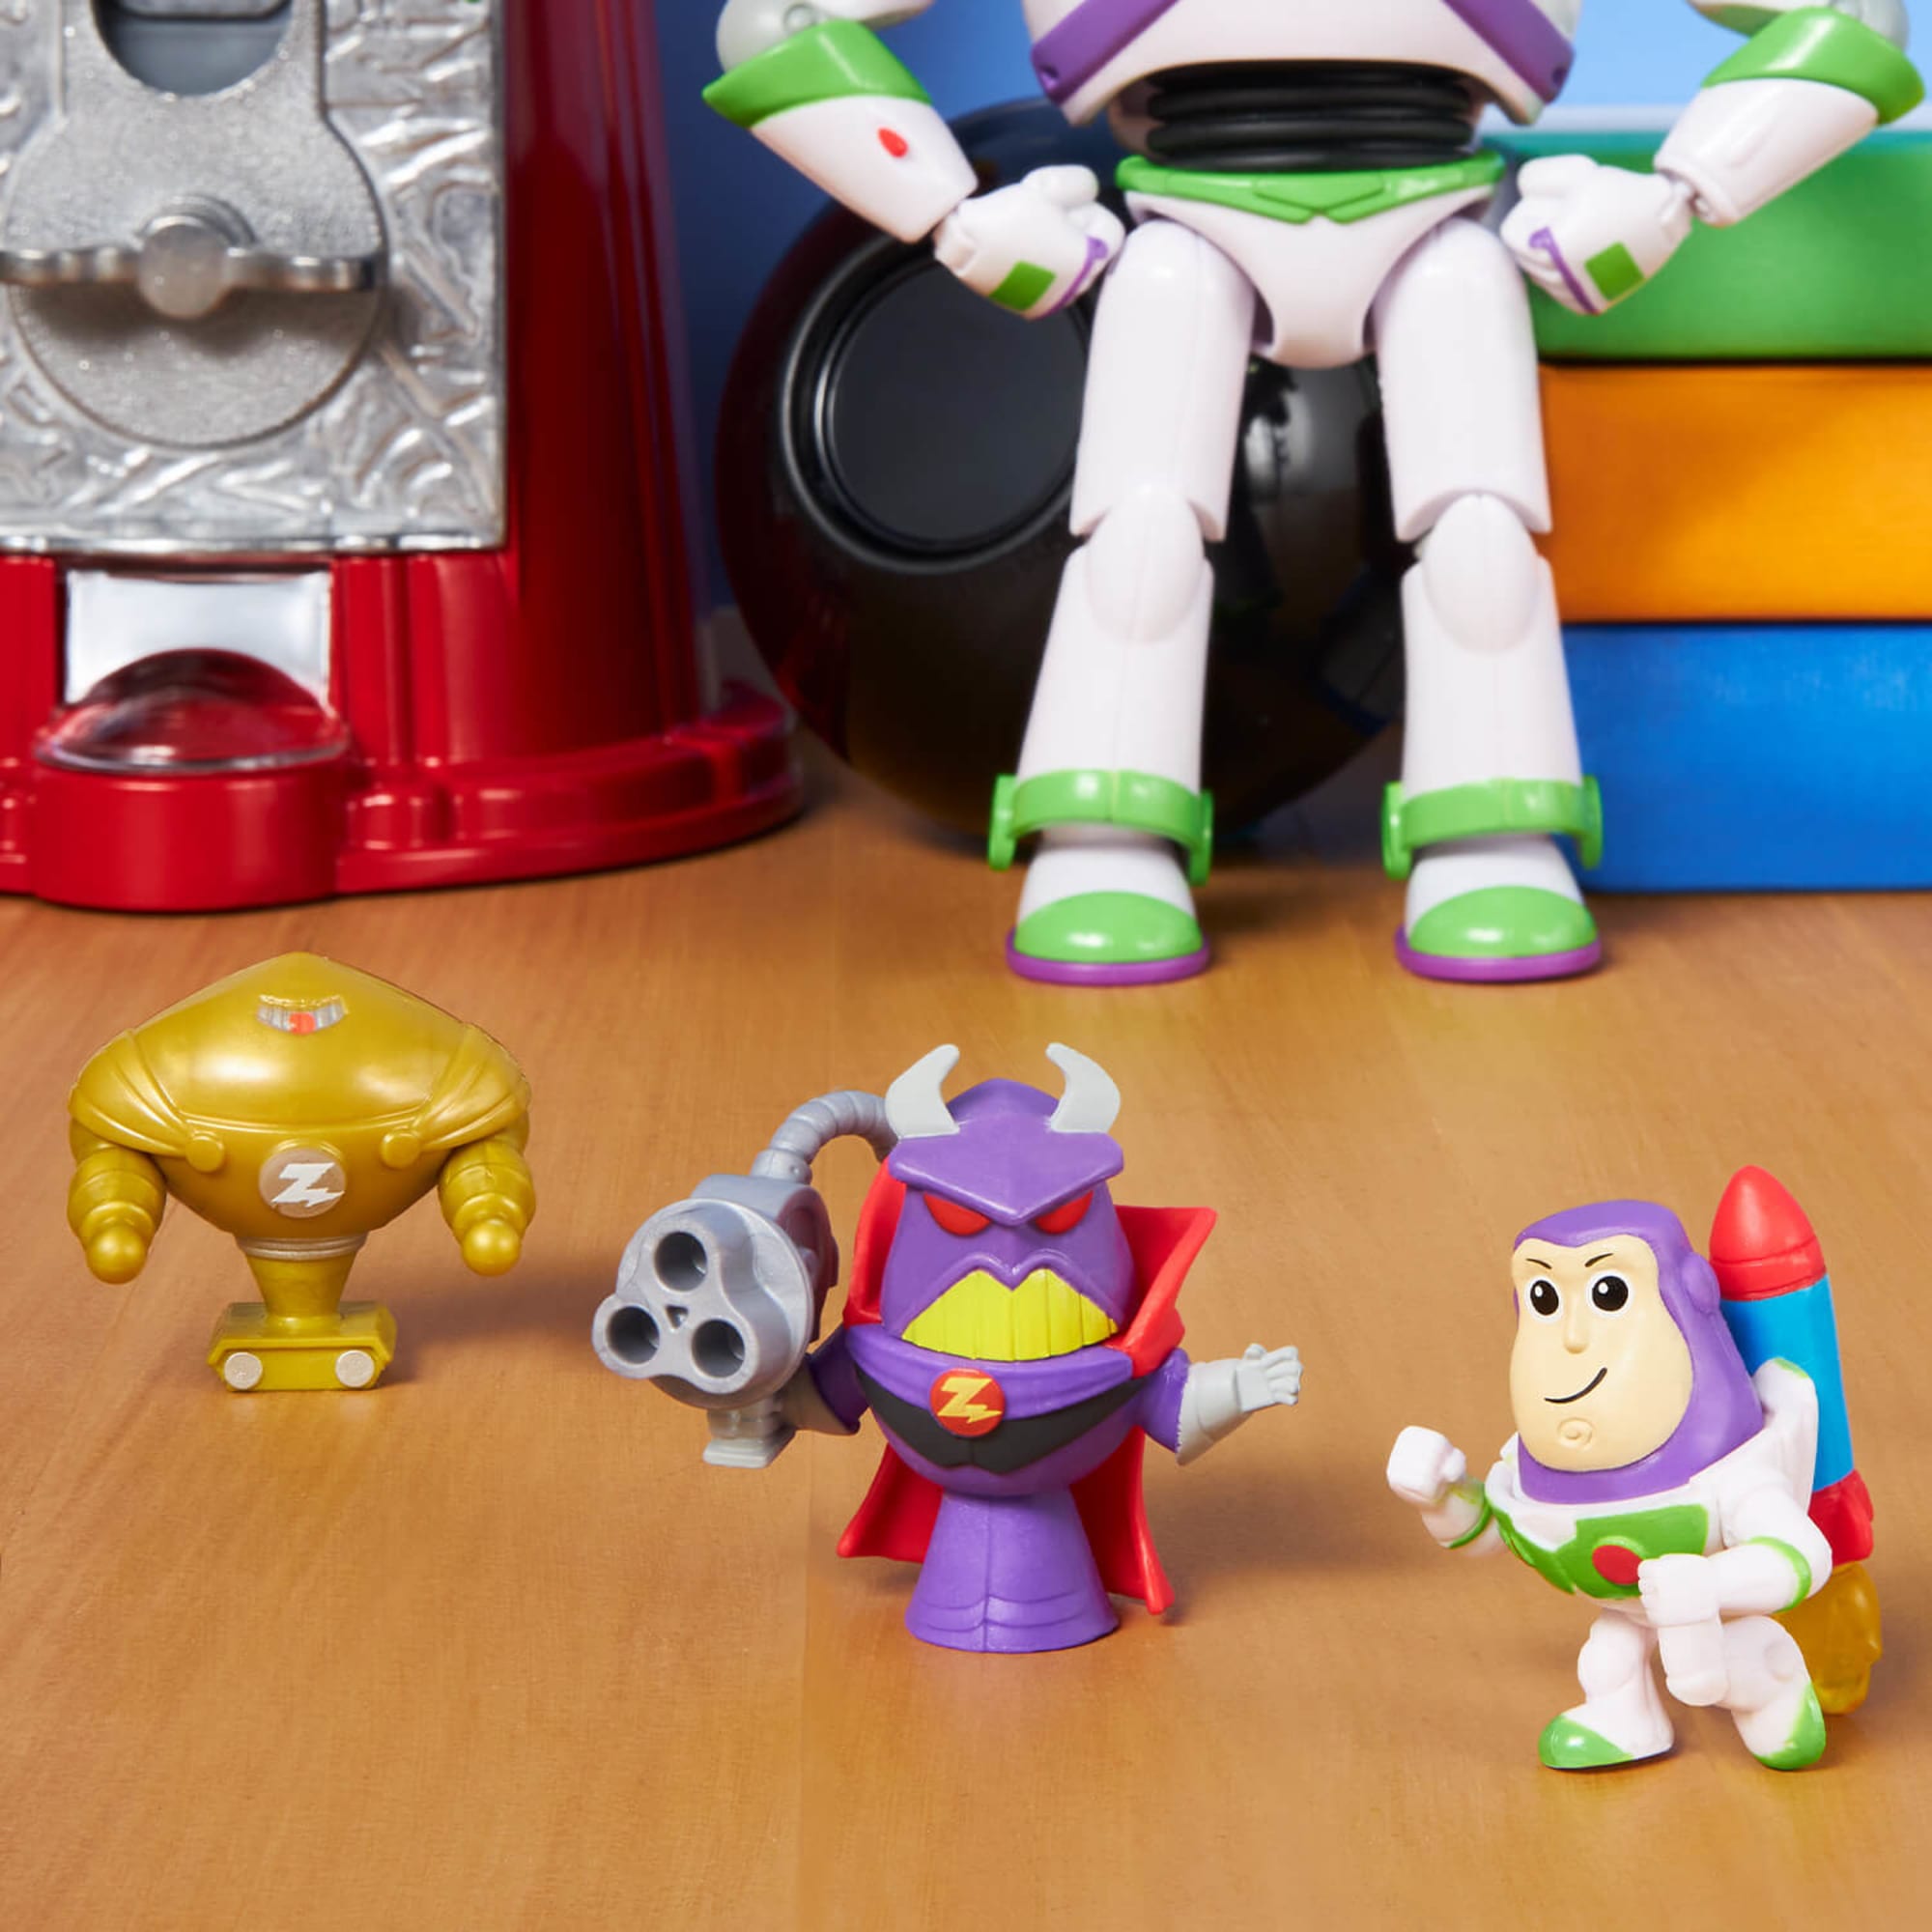 Pack de 10 mini-figurines Disney Toy Story - Figurine de